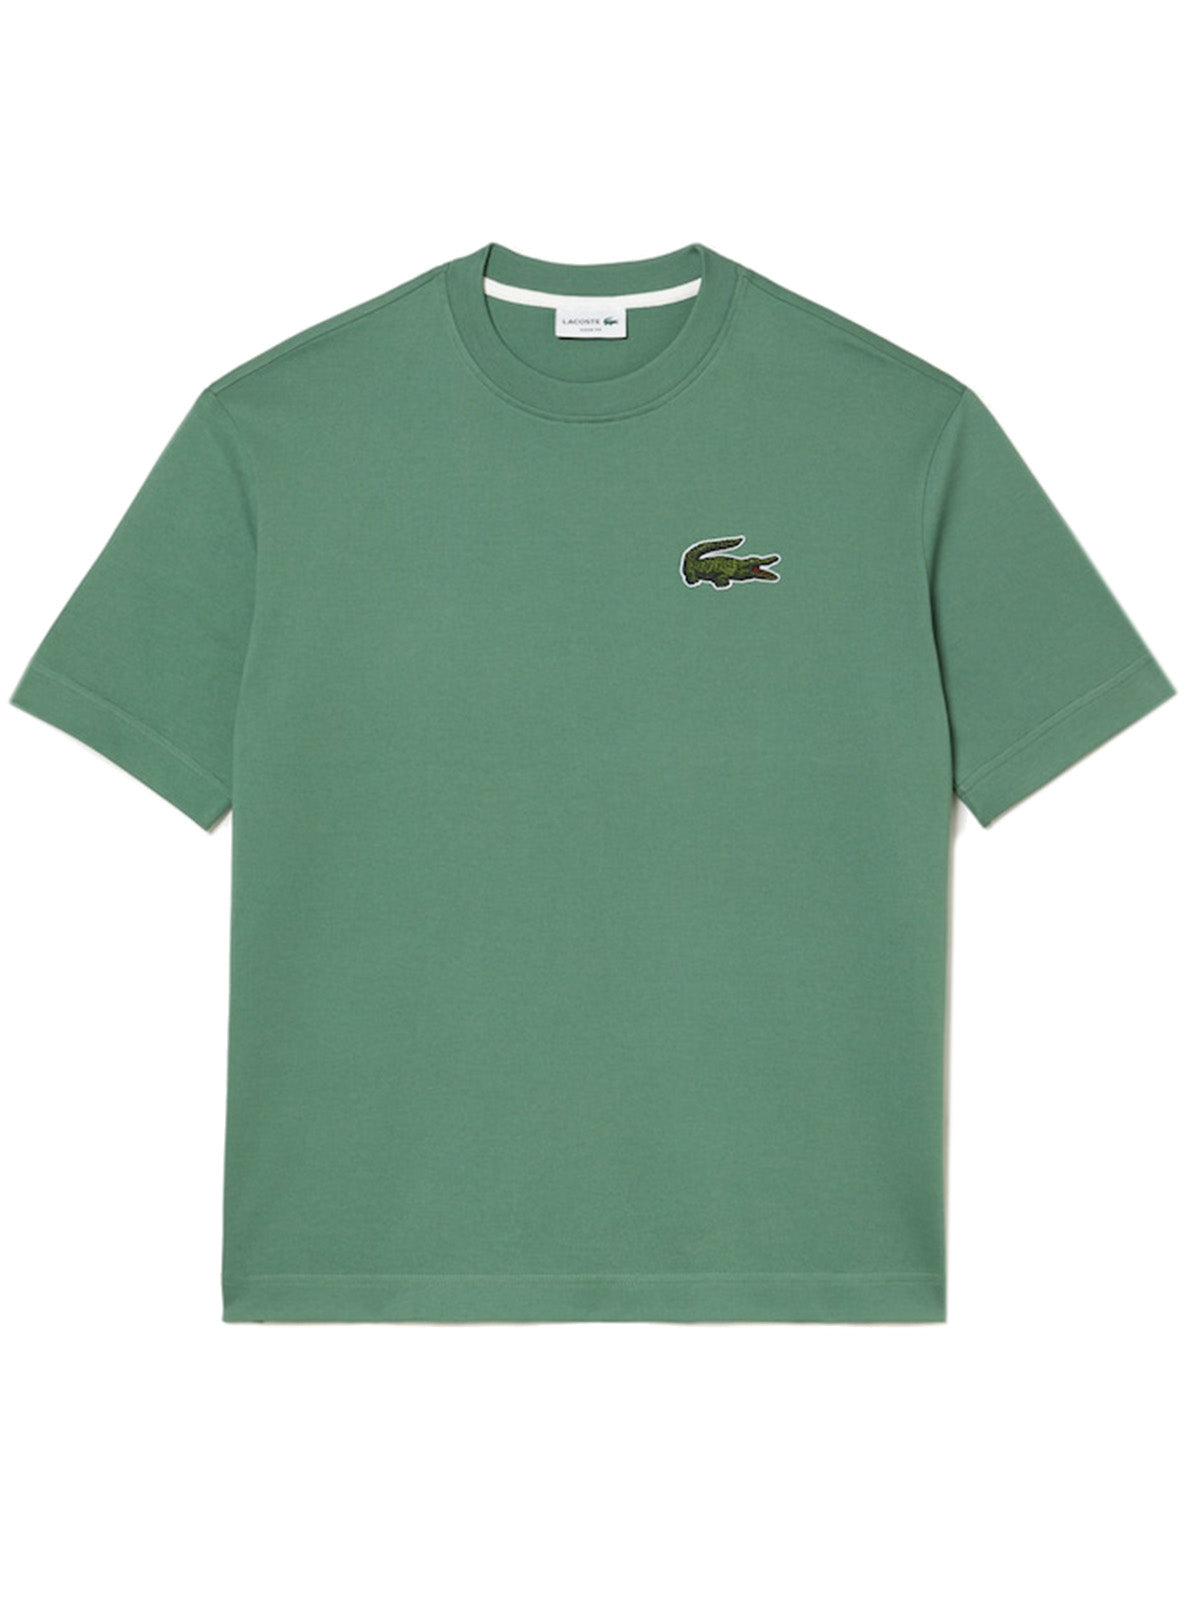 T-shirt Unisex Lacoste - Unisex Loose Fit Organic Cotton T-Shirt - Verde